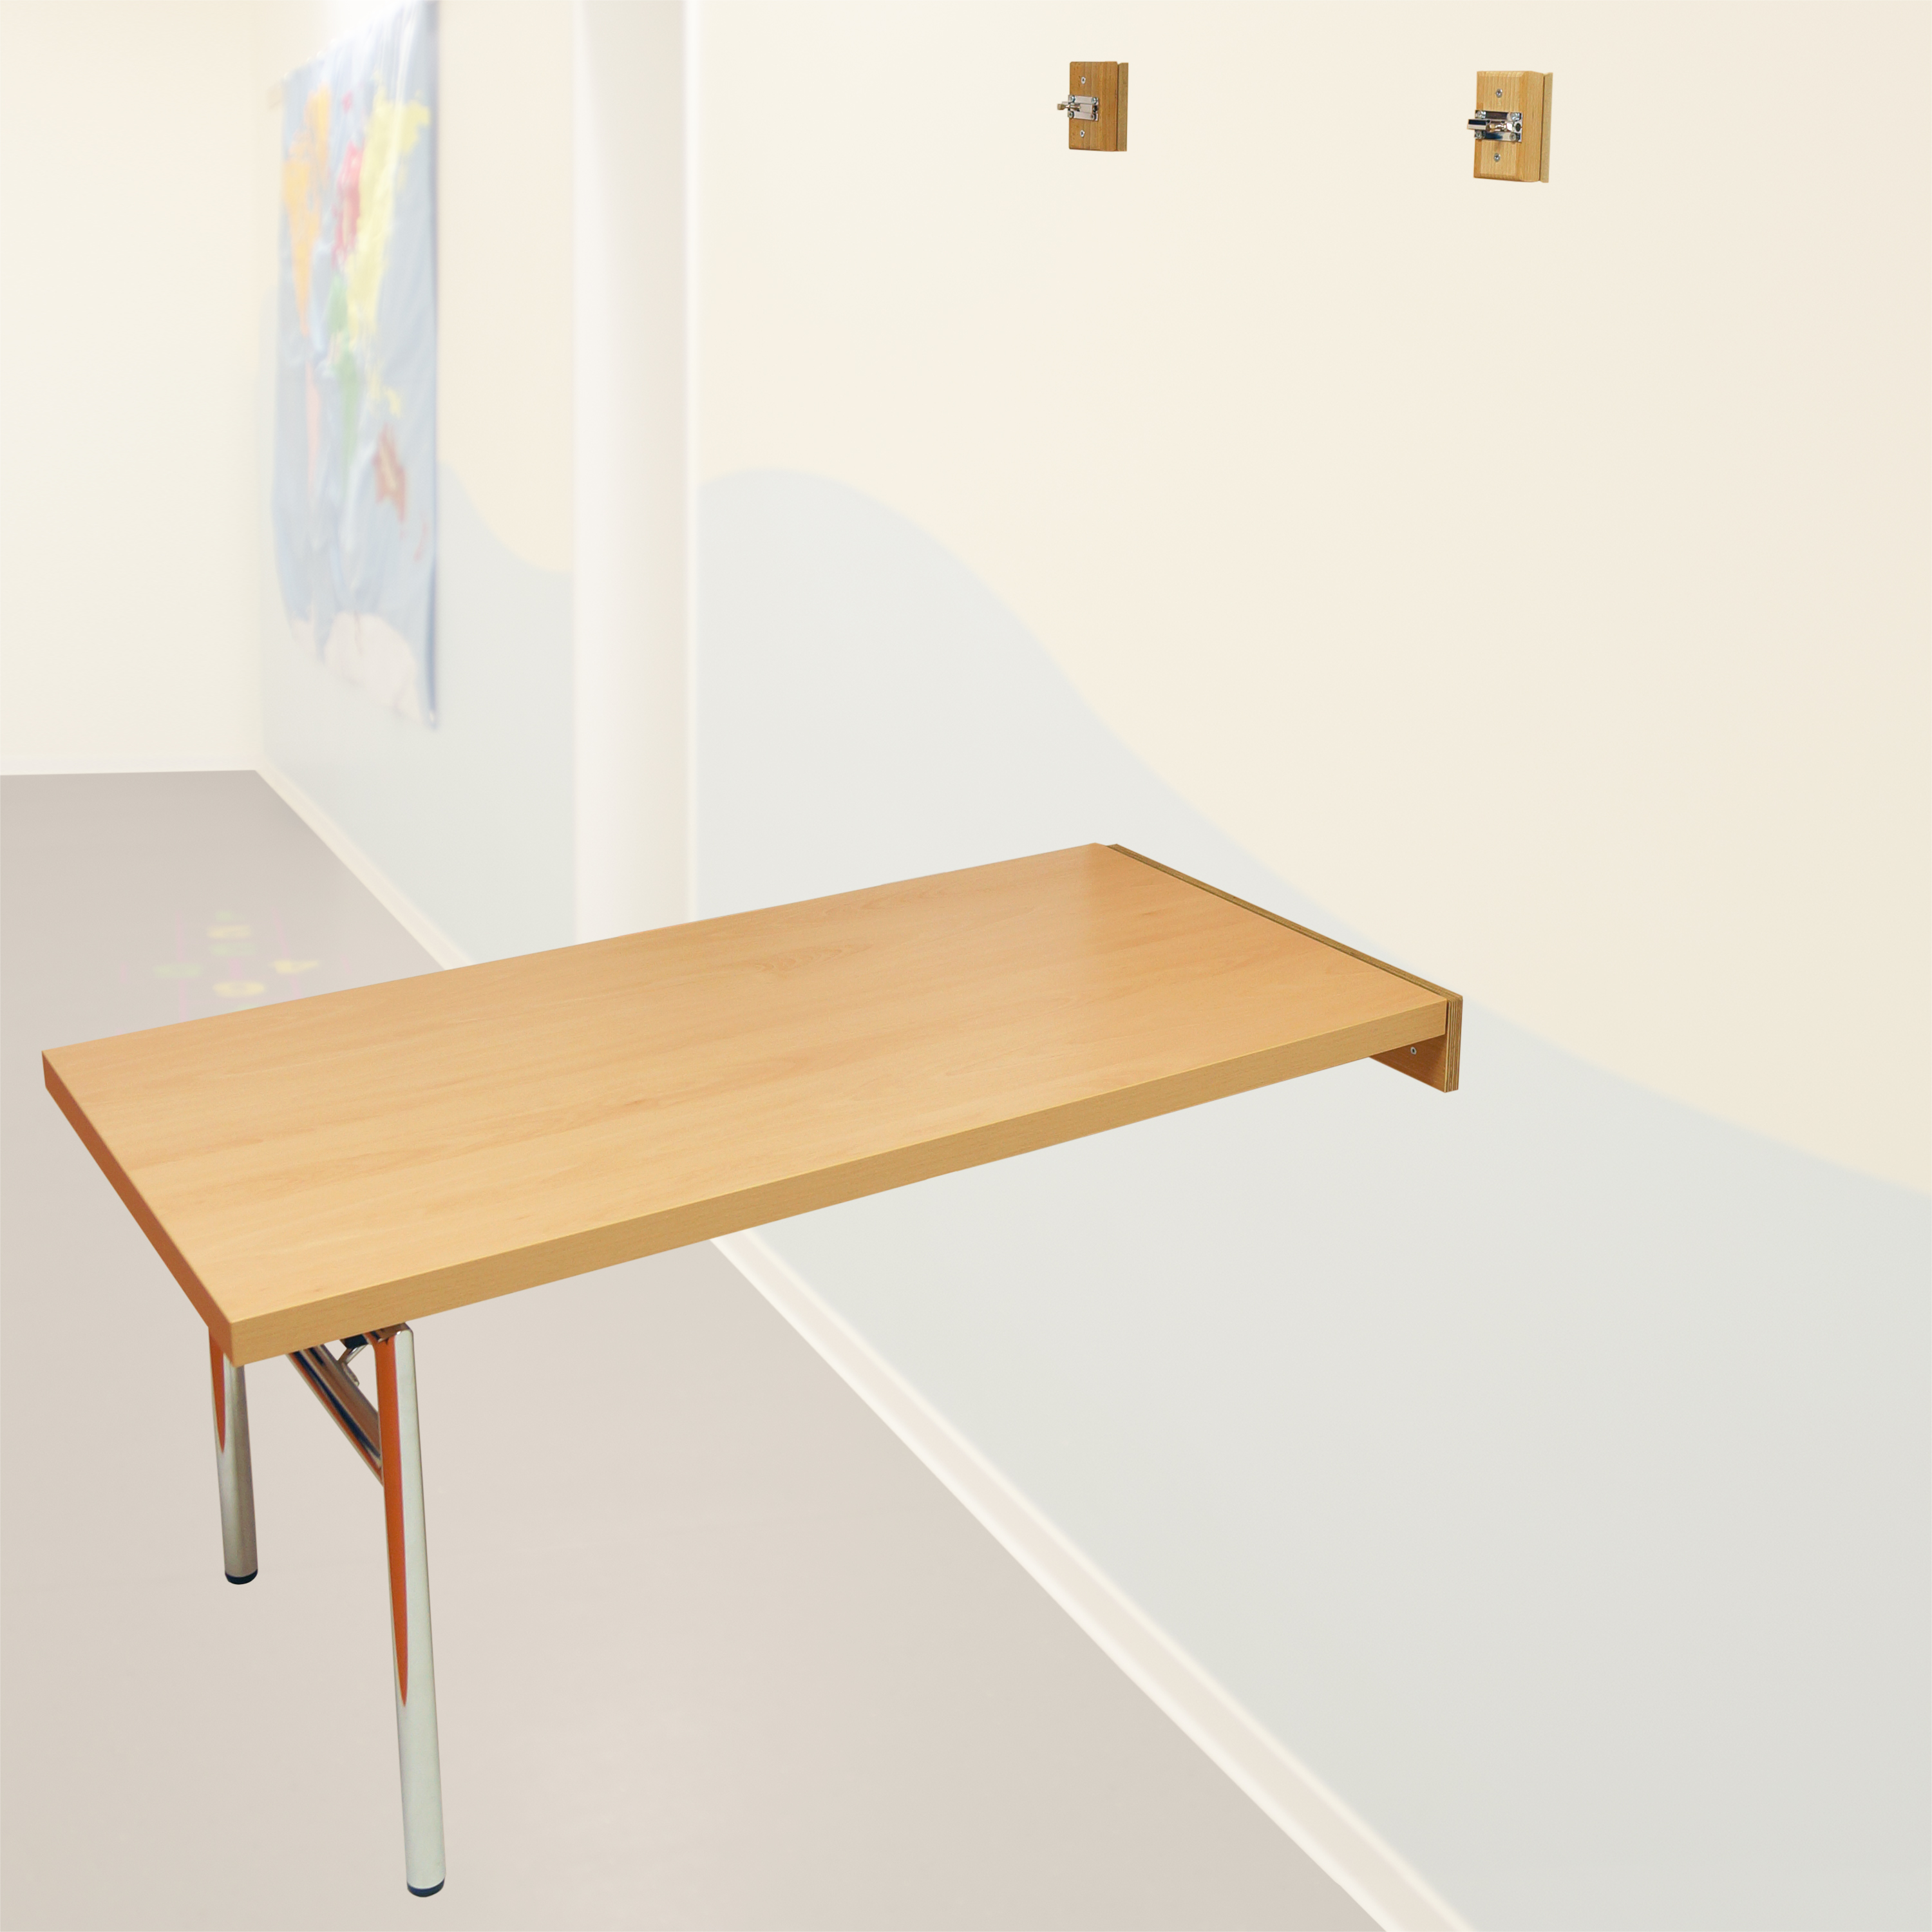 Wandklapptisch, 120 x 60 cm, Tischhöhe 40 cm